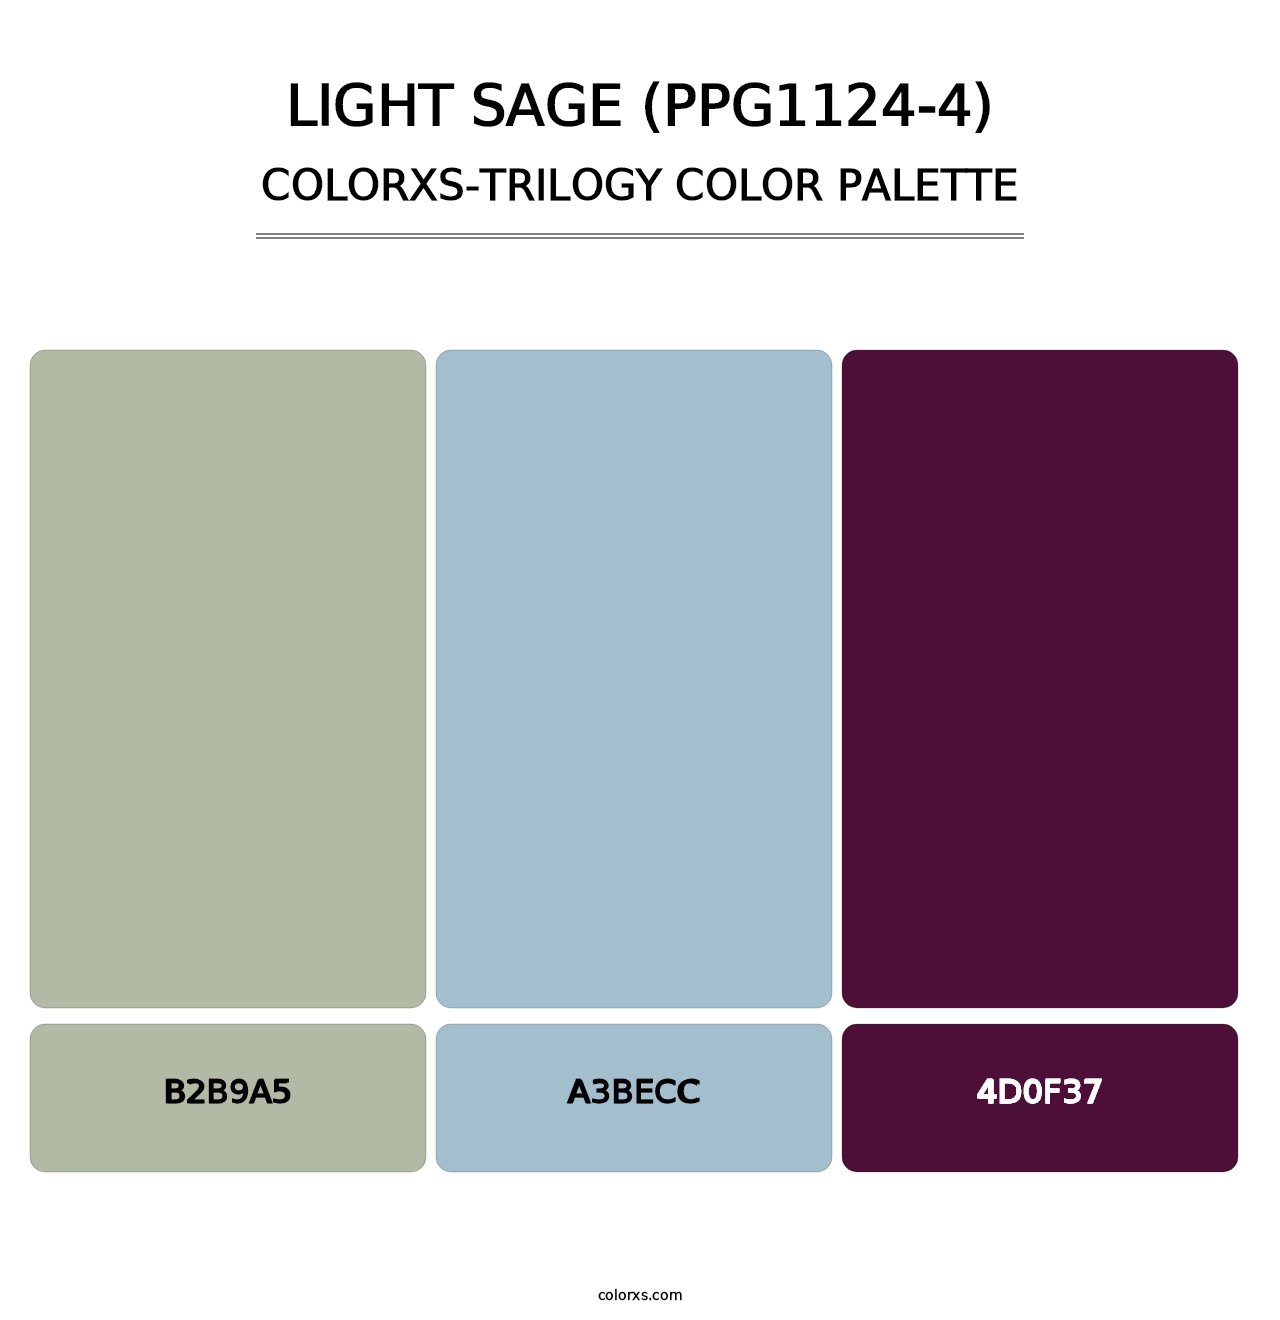 Light Sage (PPG1124-4) - Colorxs Trilogy Palette